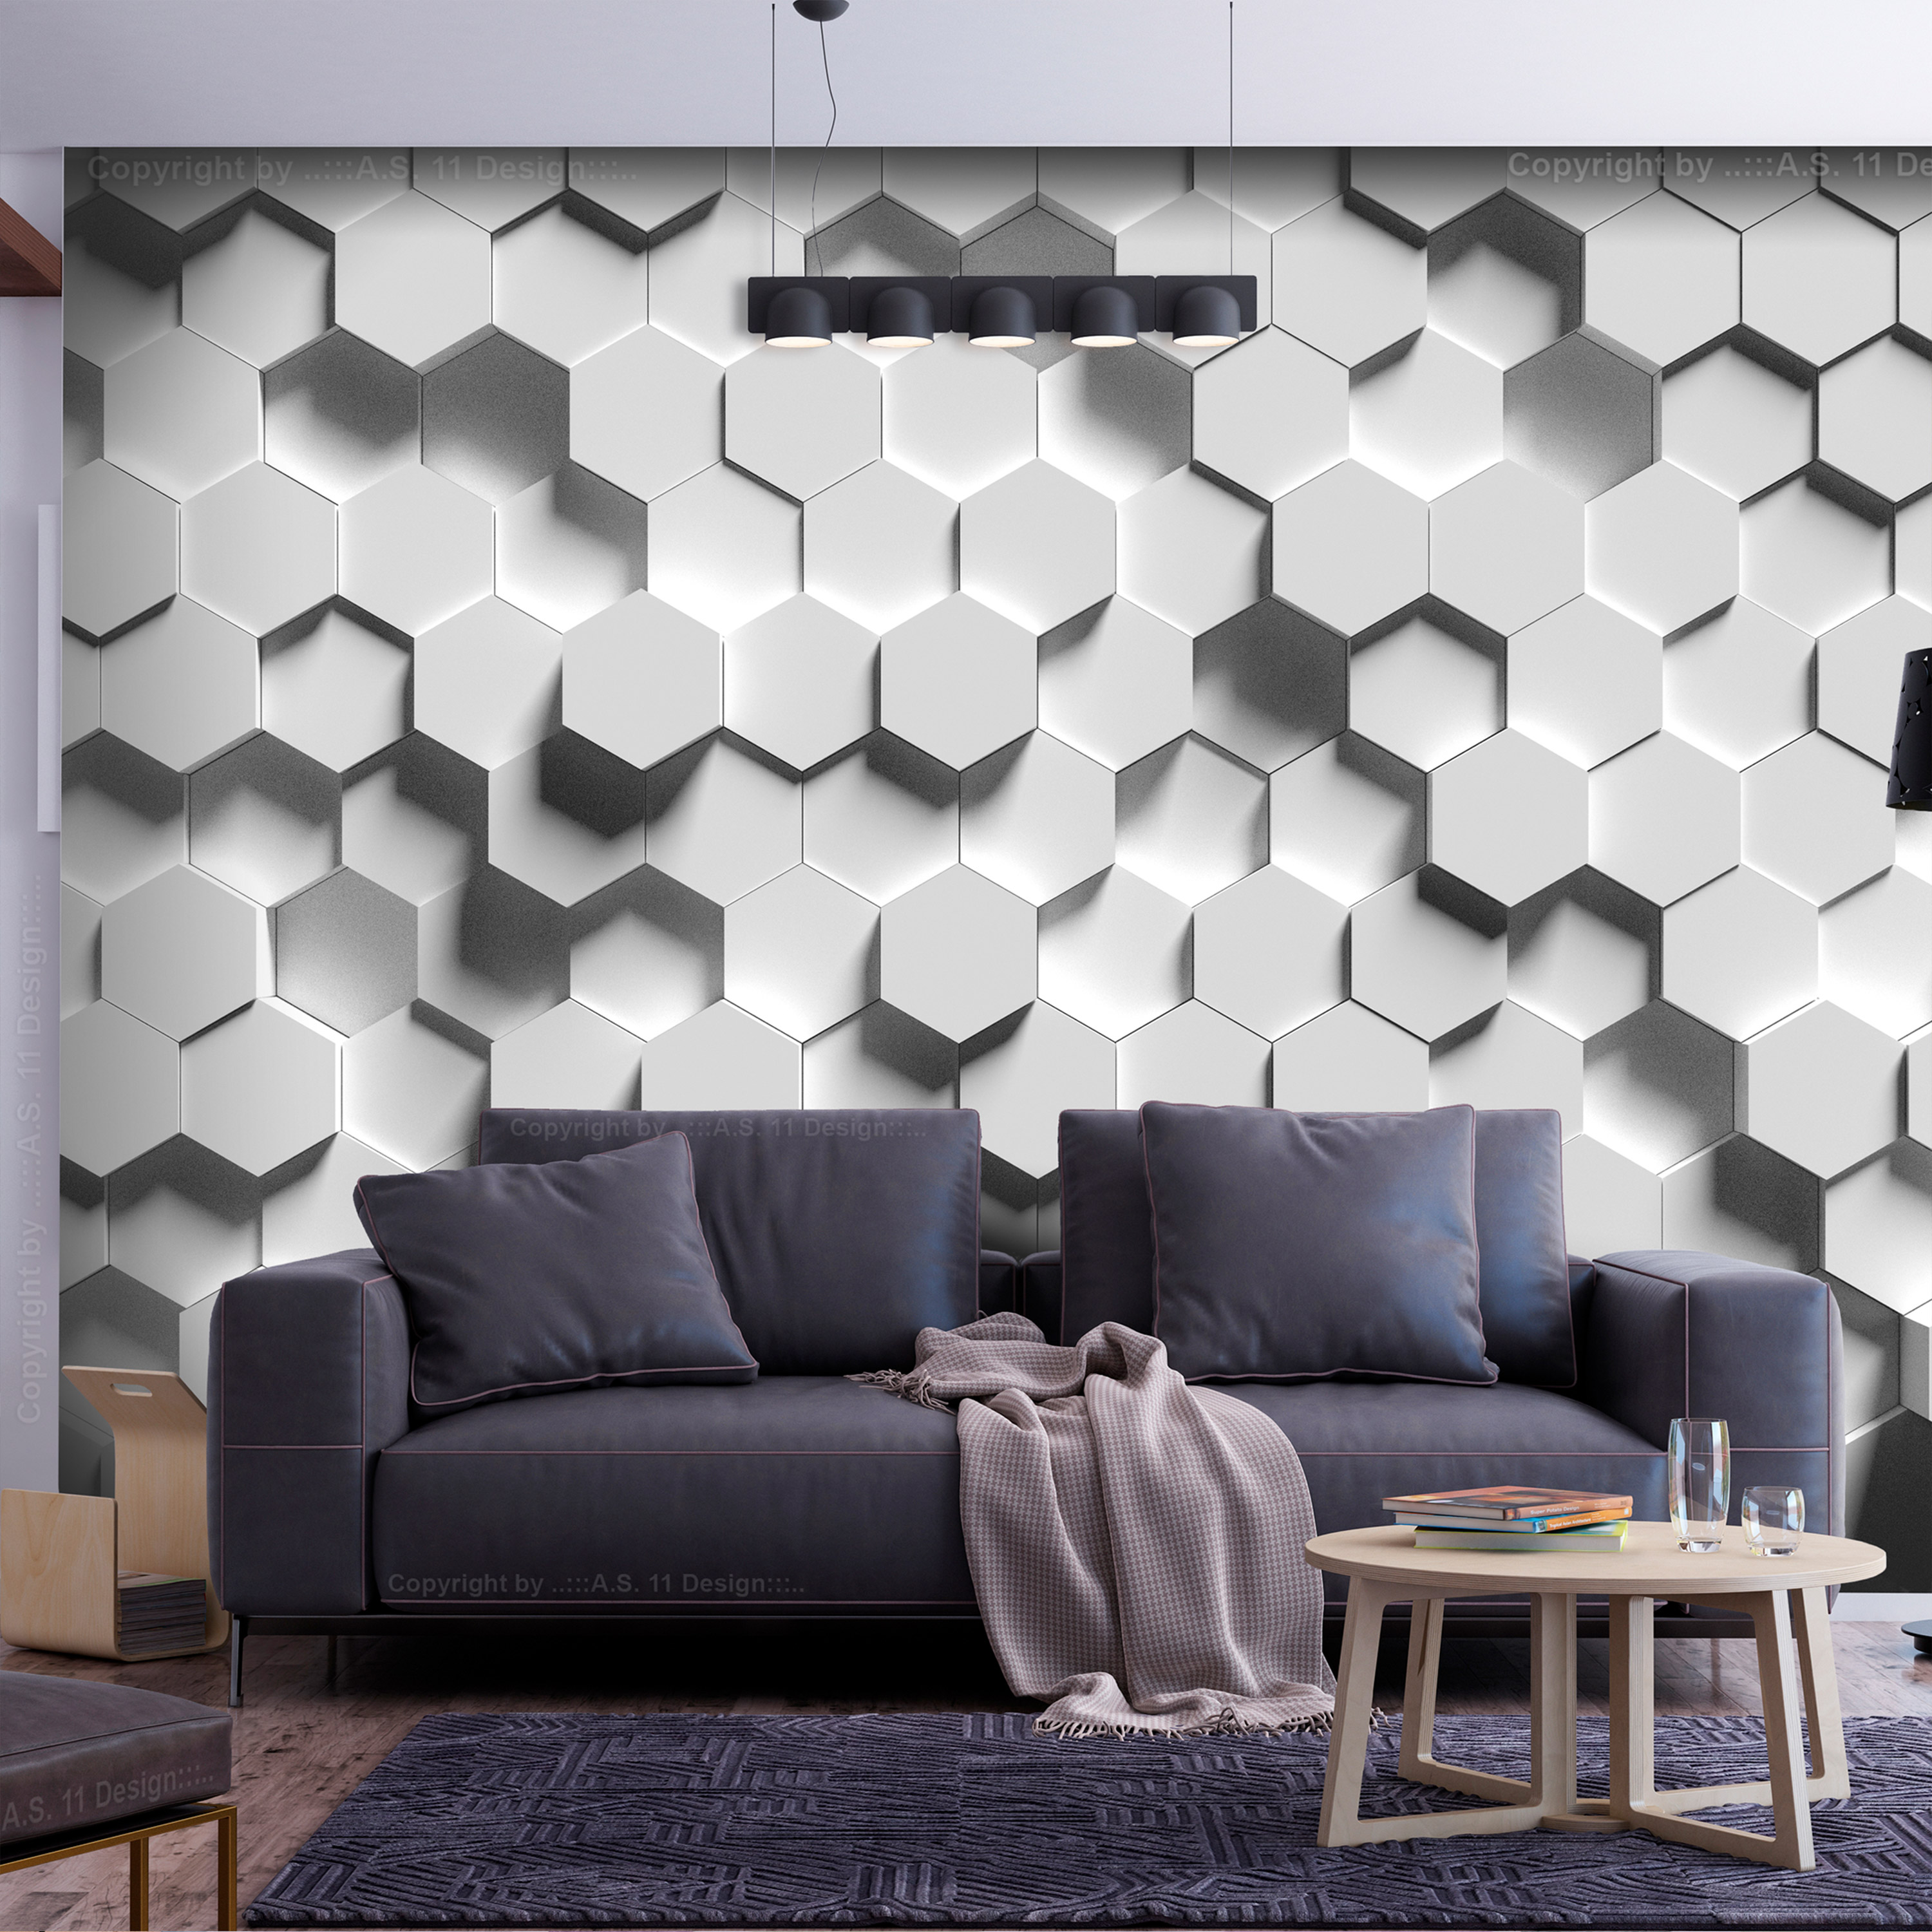 Self-adhesive Wallpaper - Hexagonal Awareness - 147x105